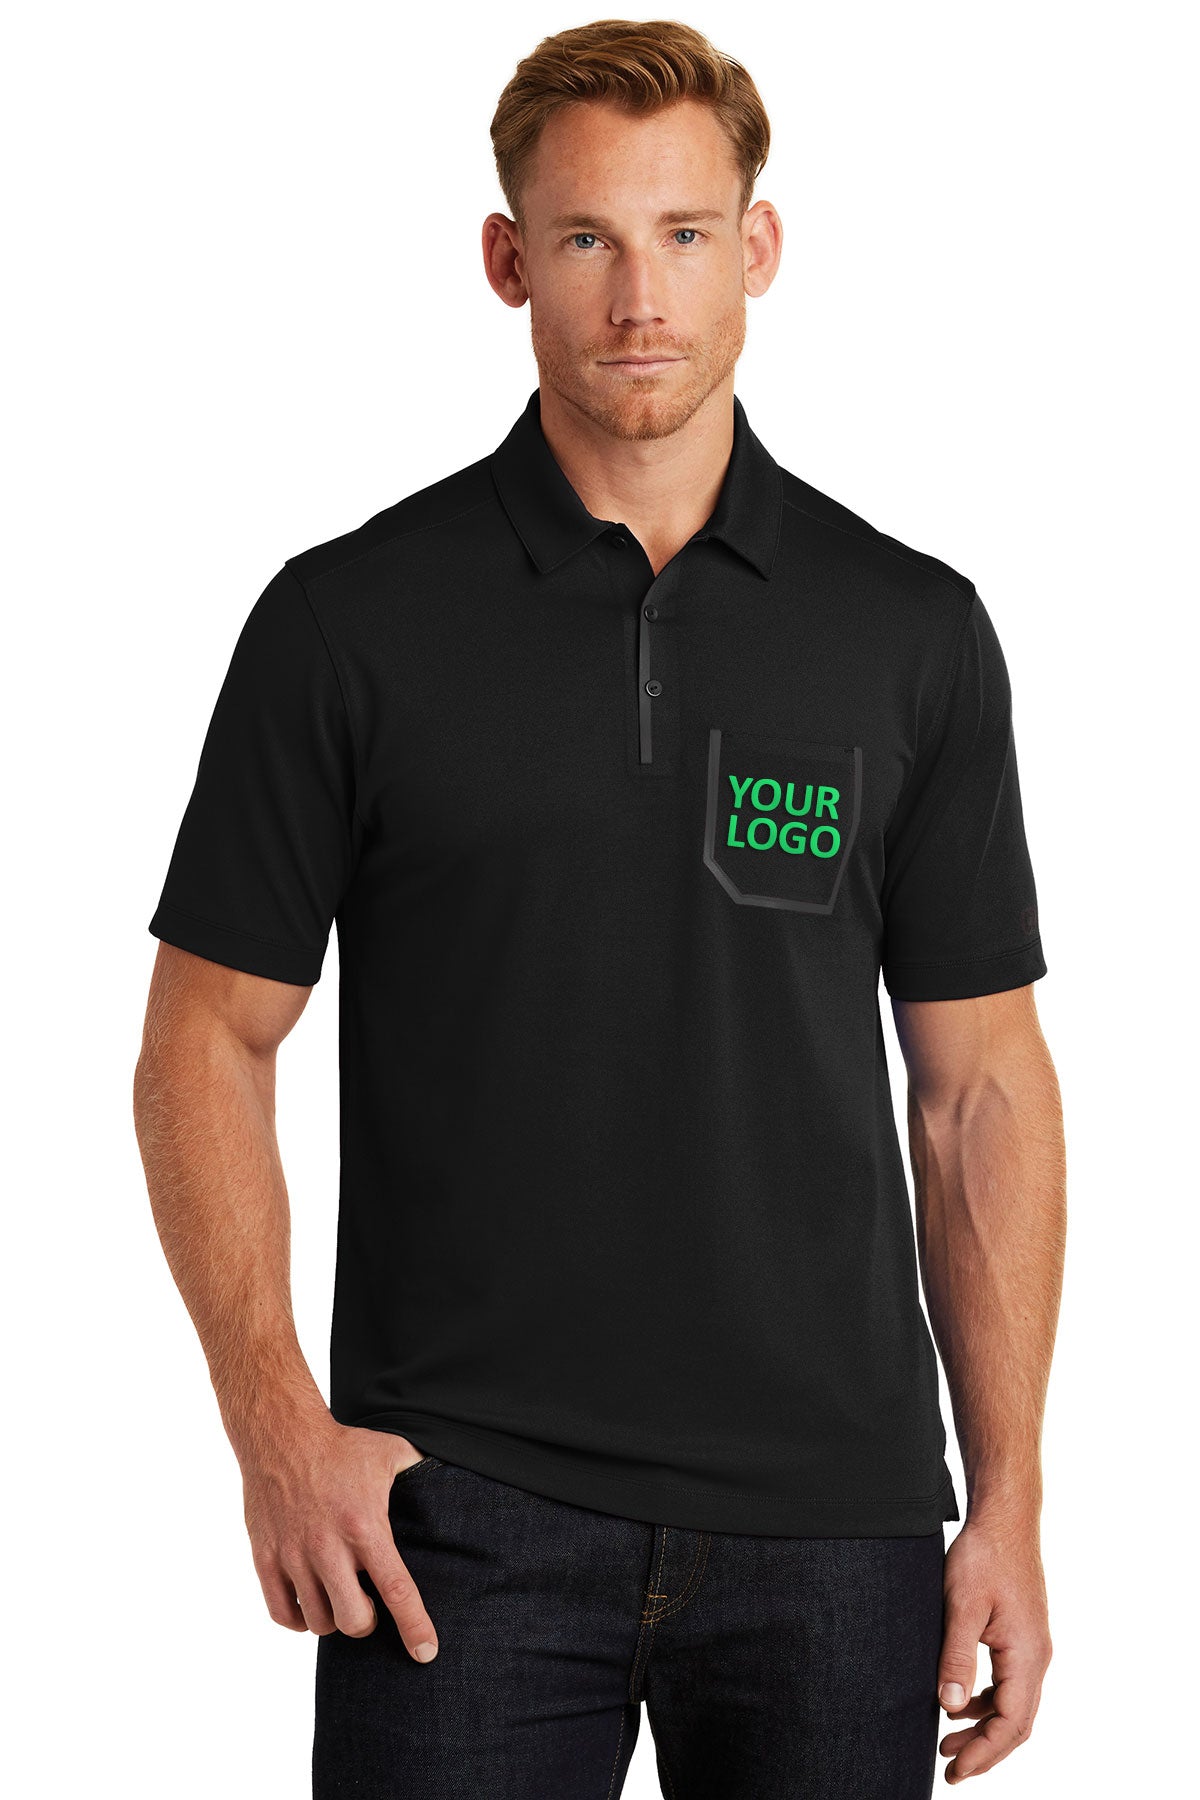 OGIO Blacktop OG131 custom polo shirts embroidered